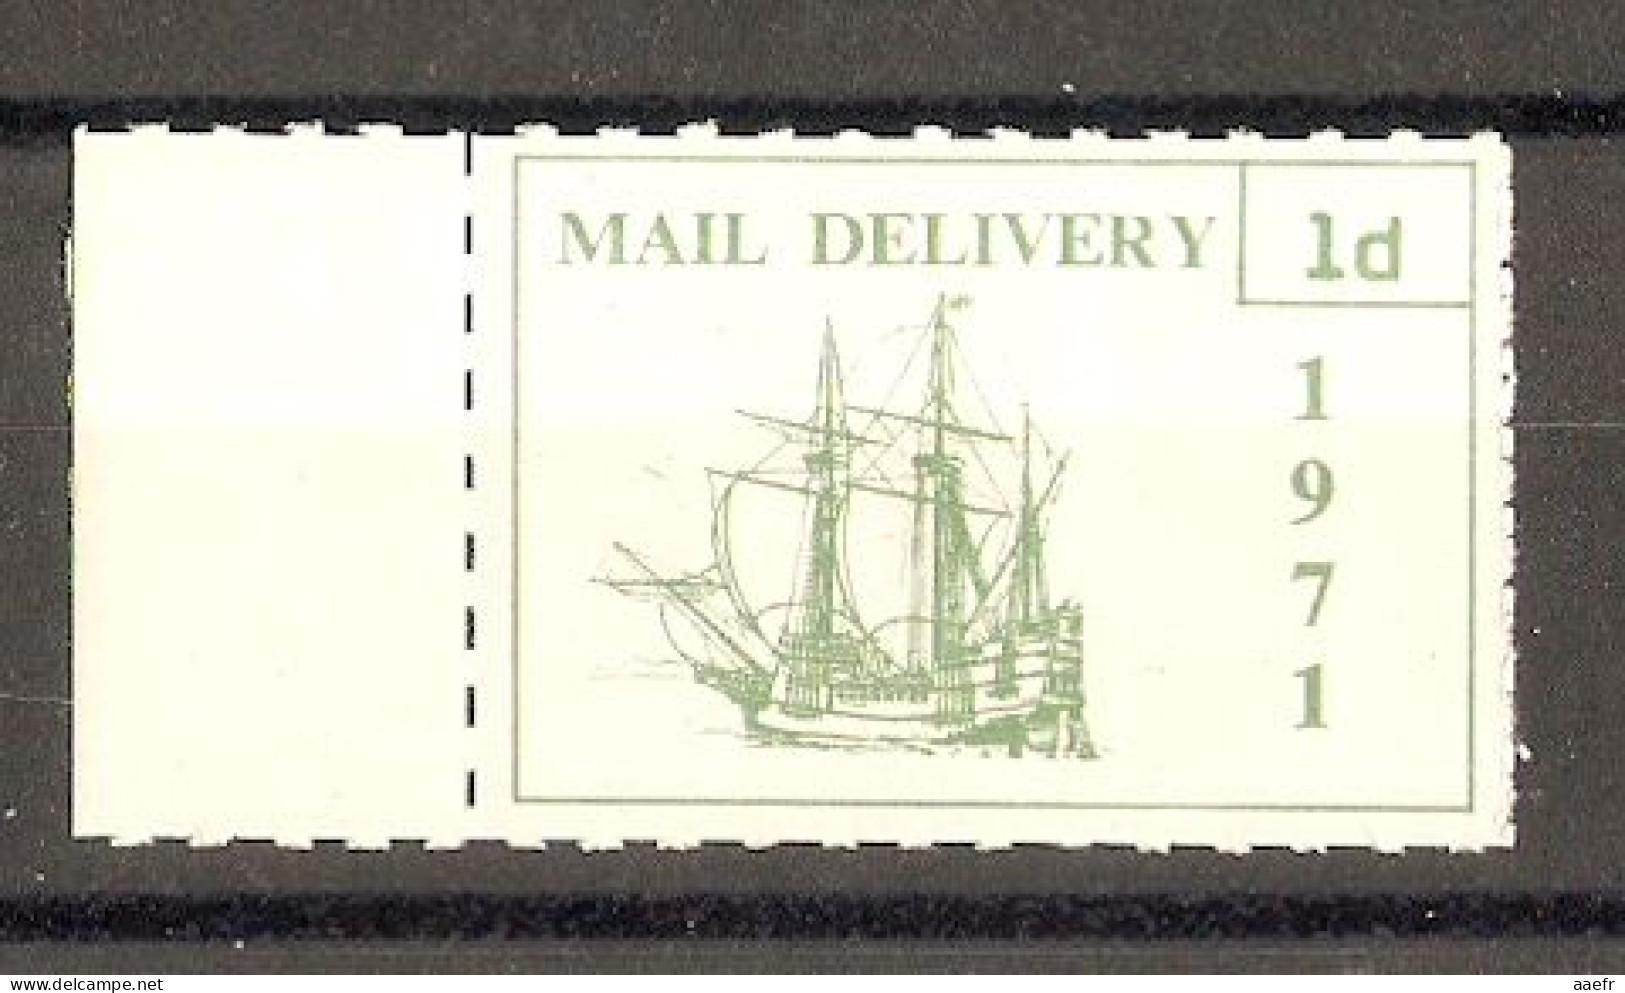 GB 1971 - Timbre Neuf - Mail Delivery Caravelle 1 P - Utilisé Pendant La Grève Postale - Local Issues